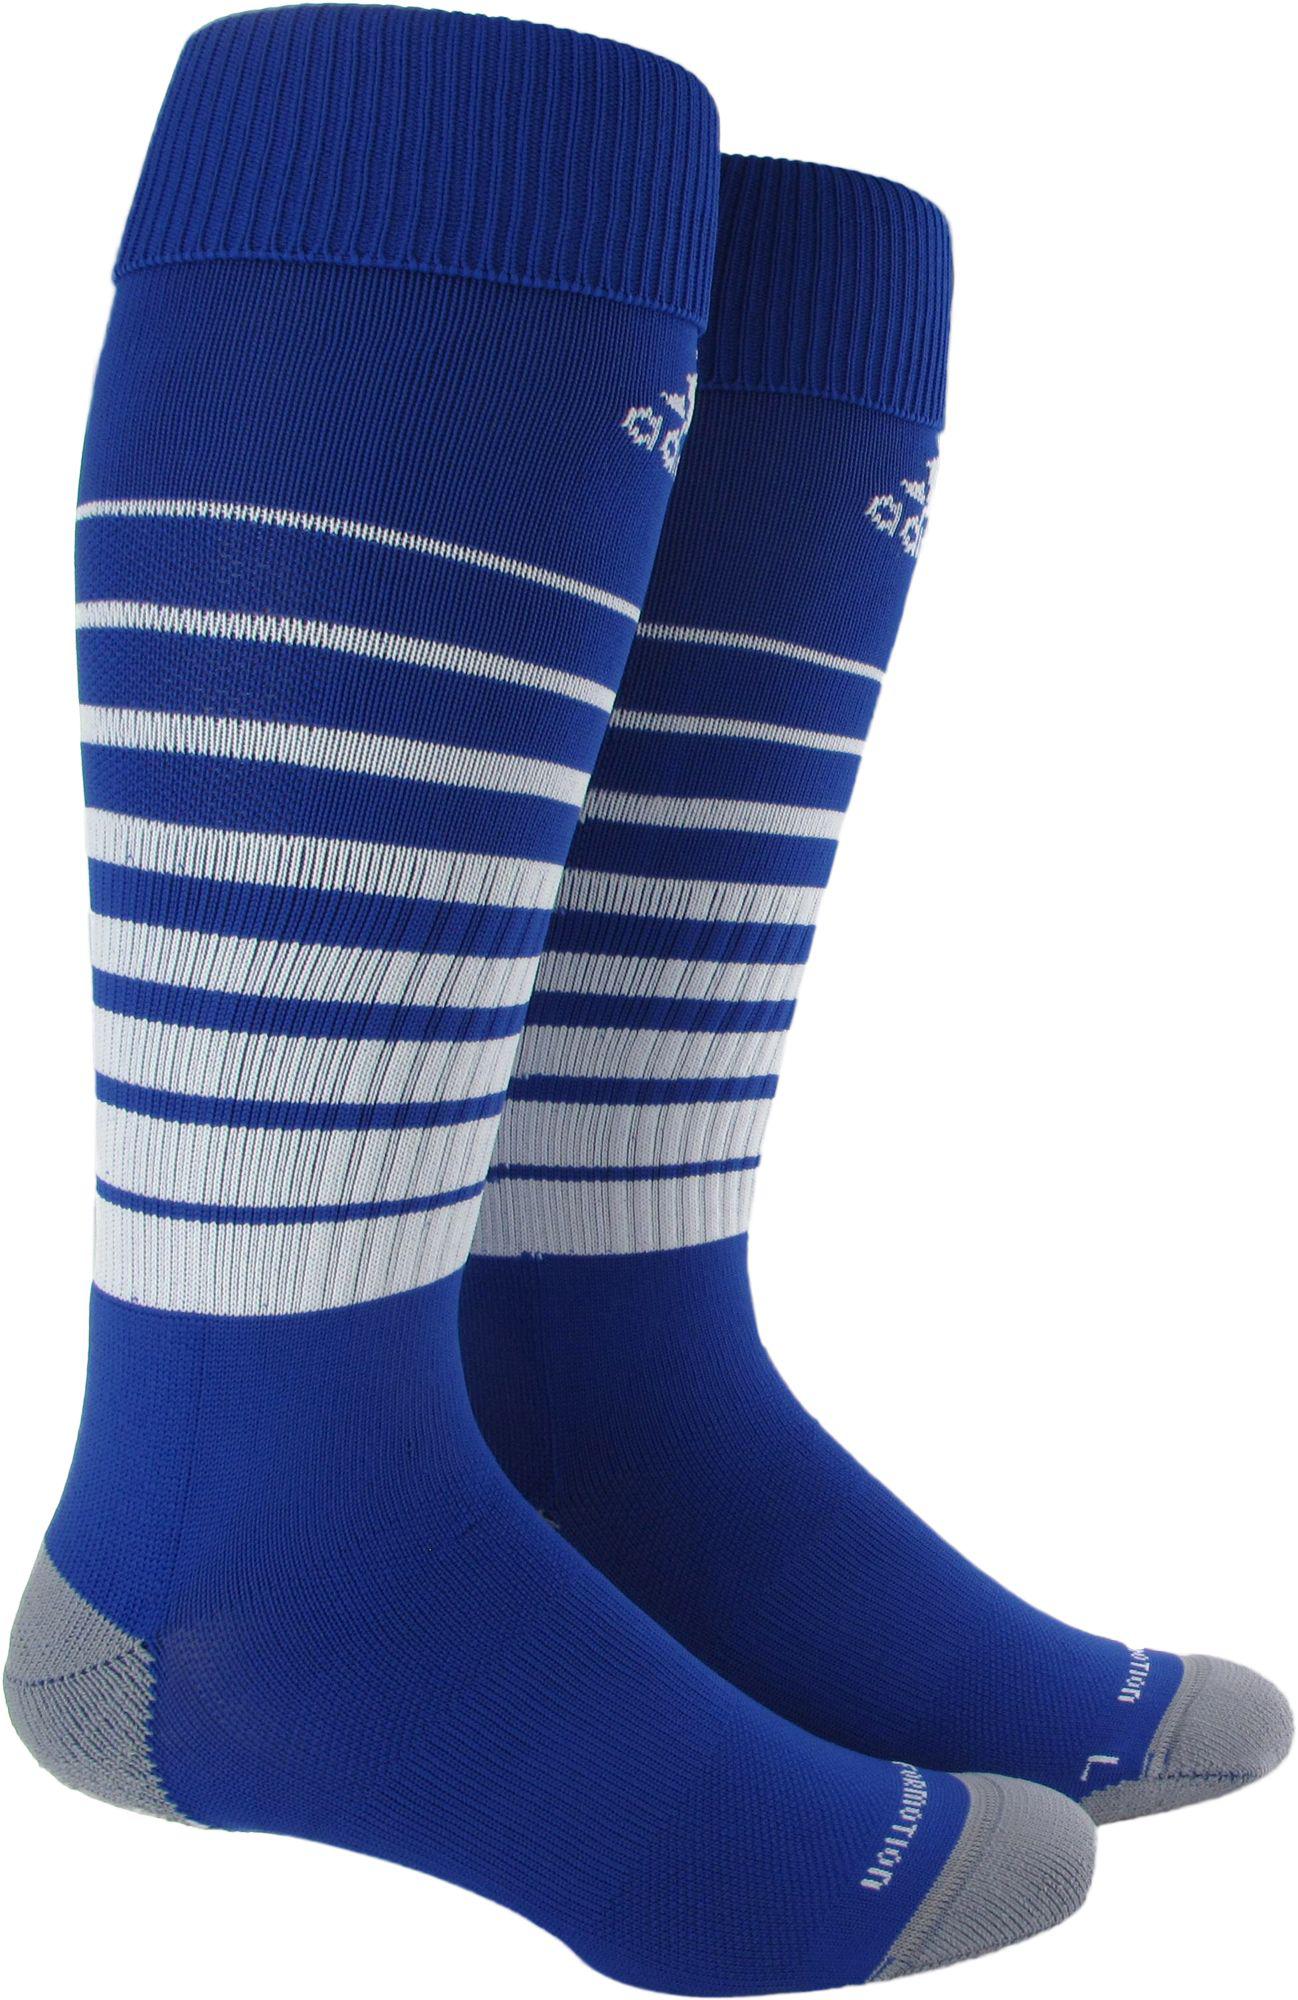 Lyst - Adidas Team Speed Soccer Socks in Blue for Men